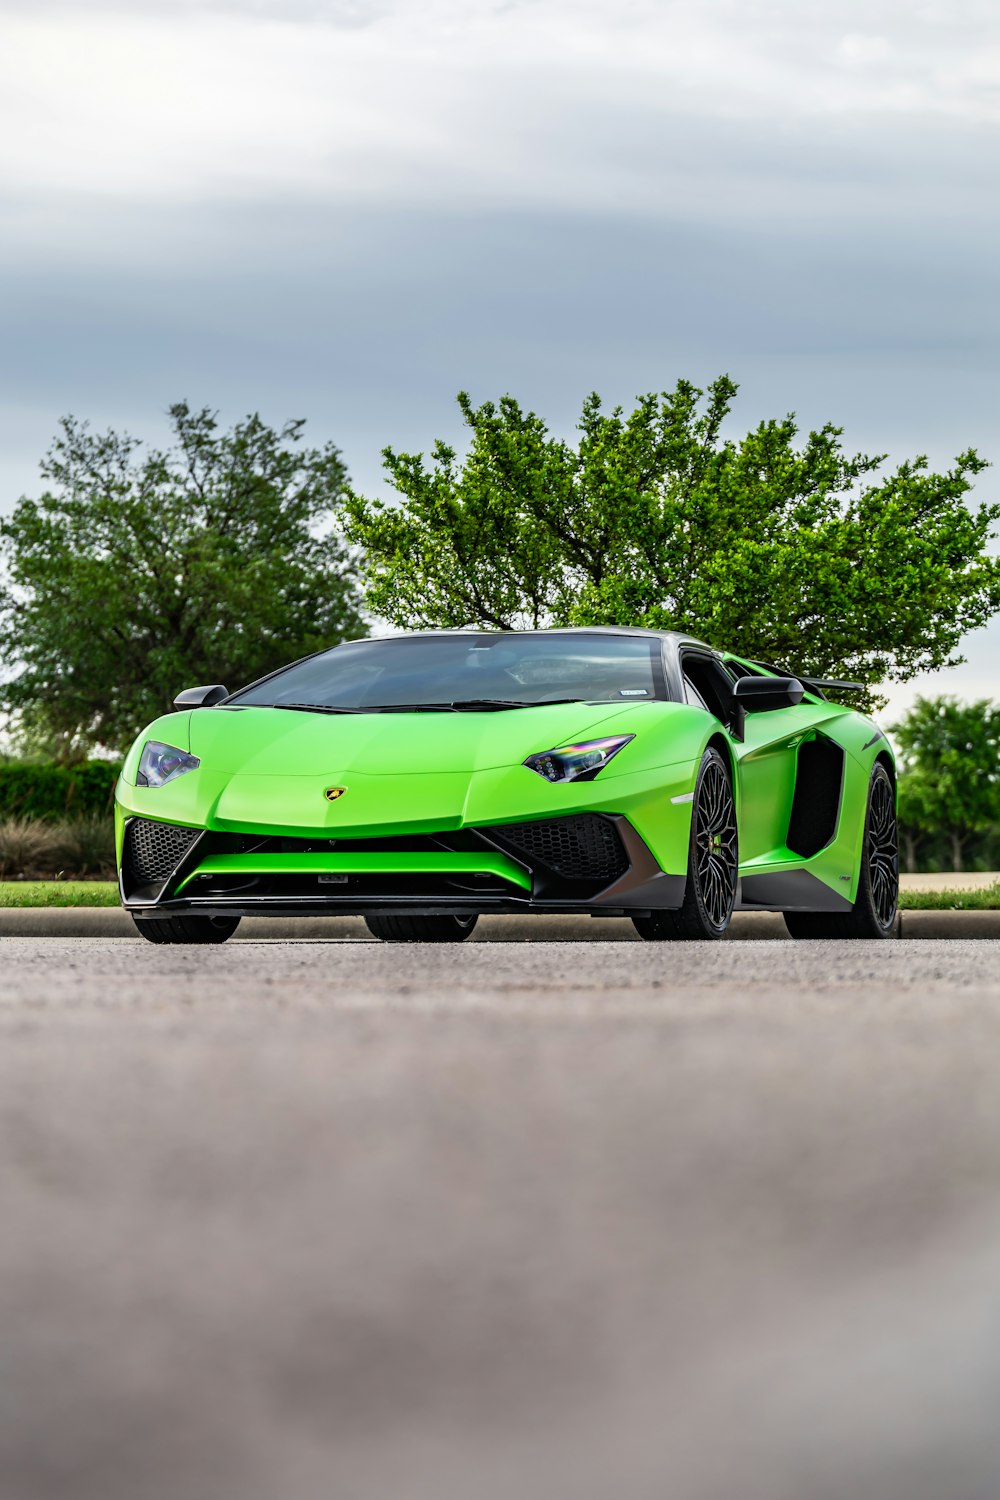 Grüner und schwarzer Lamborghini Aventador parkt tagsüber auf braunem Feld